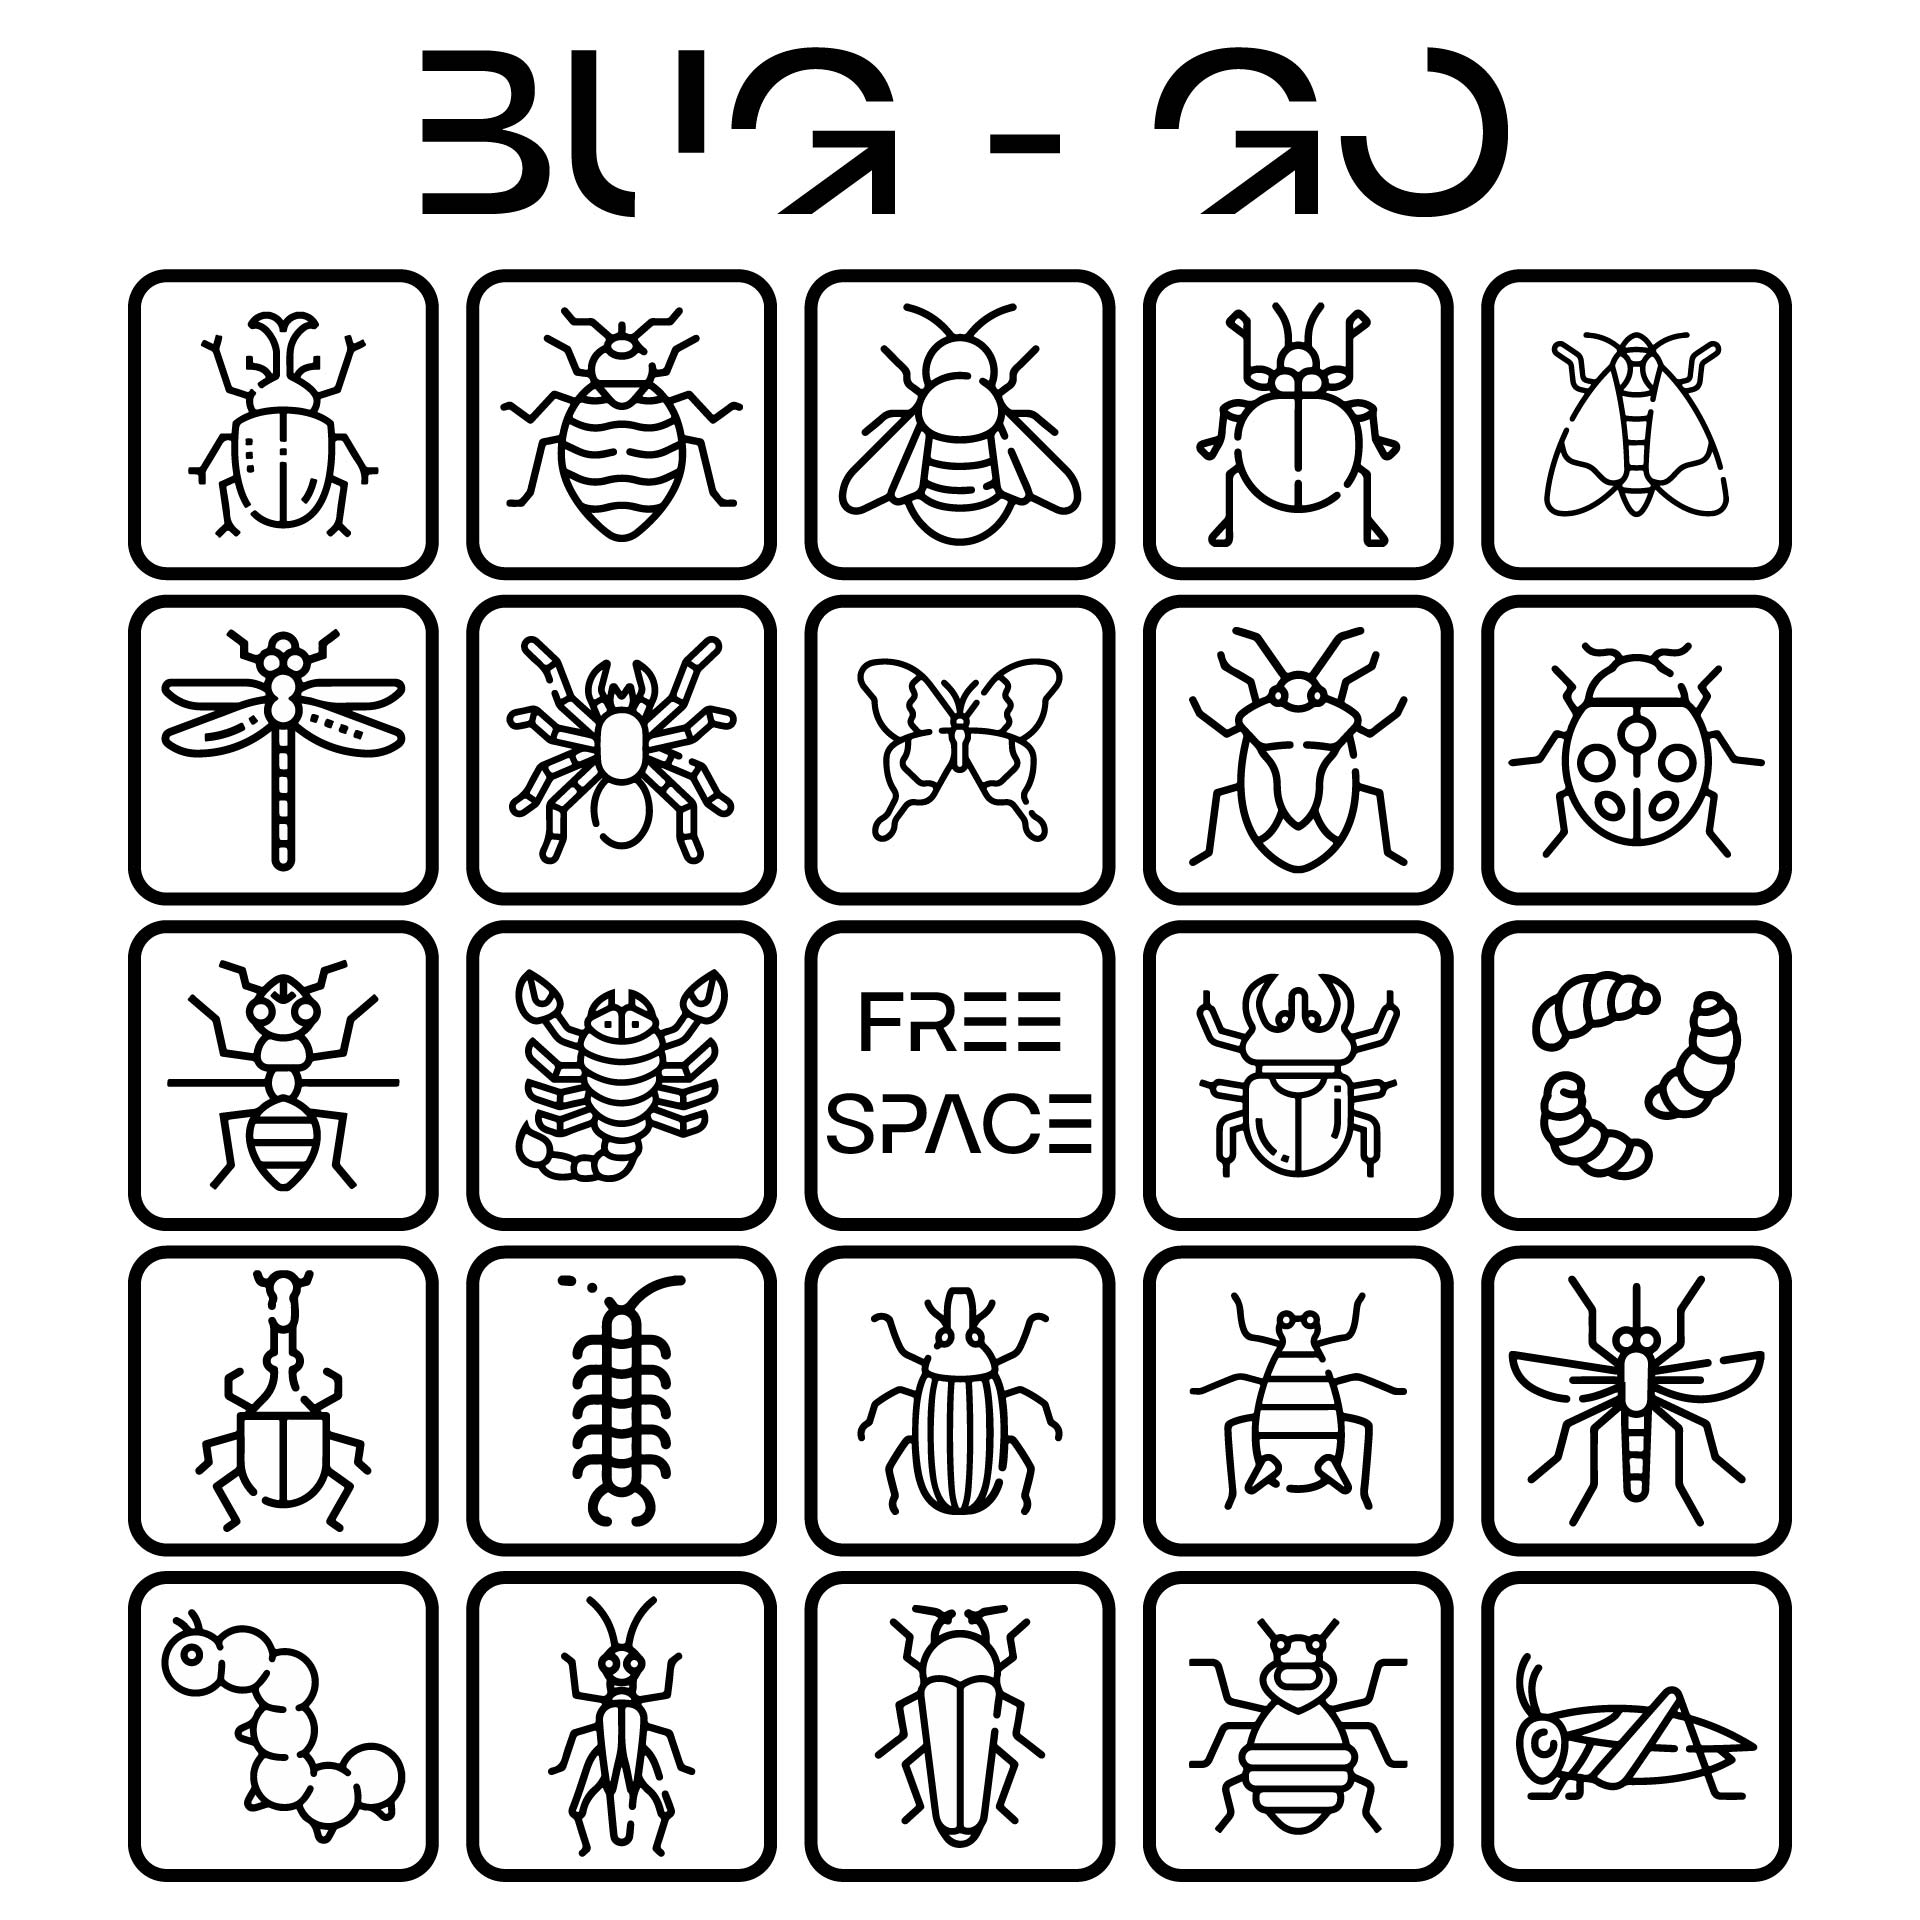 Bug Bingo Printables